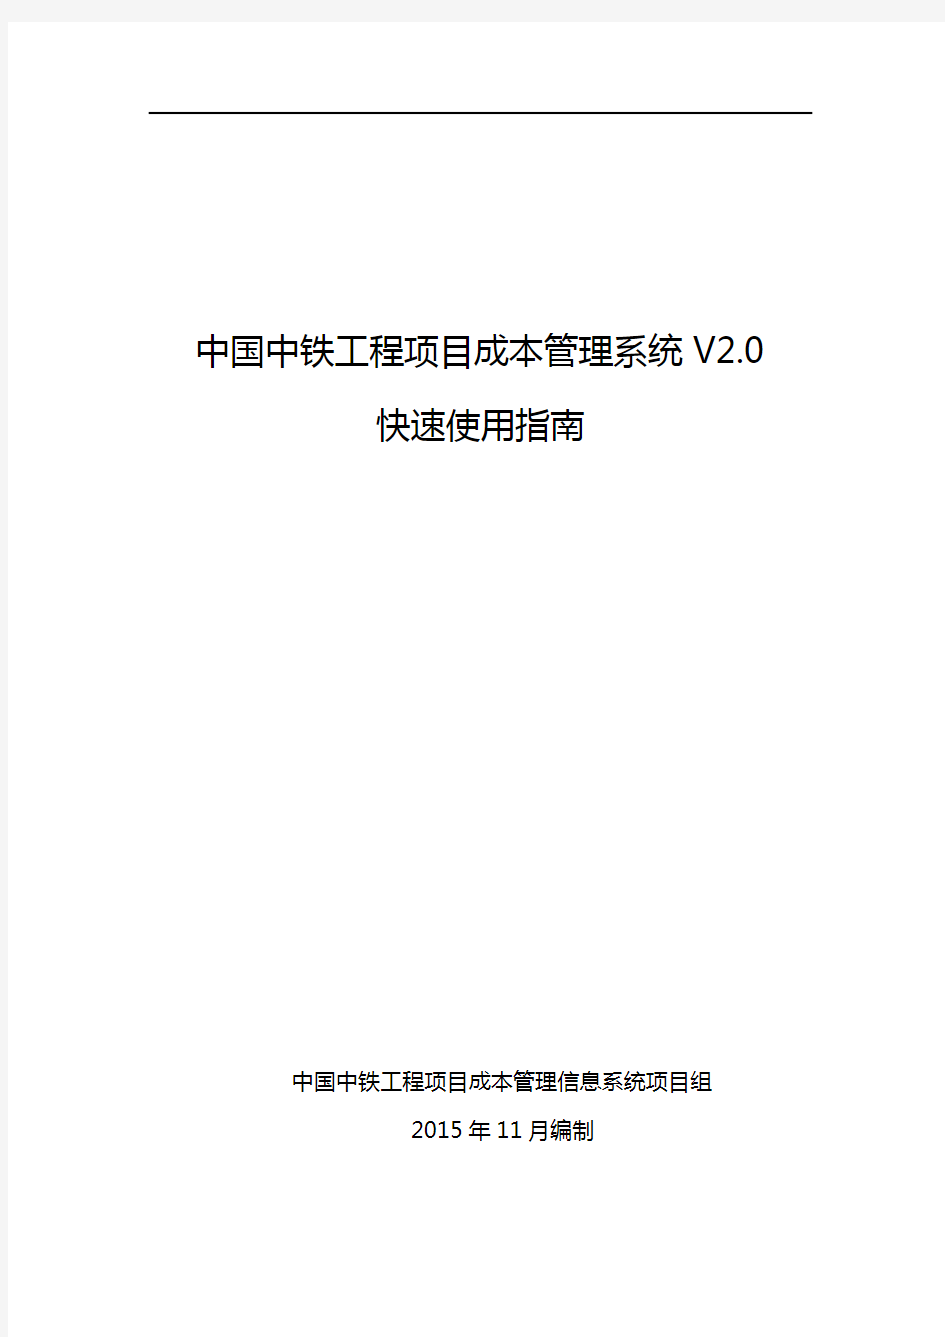 中国中铁工程项目成本管理信息系统V2.0快速使用指南教学提纲